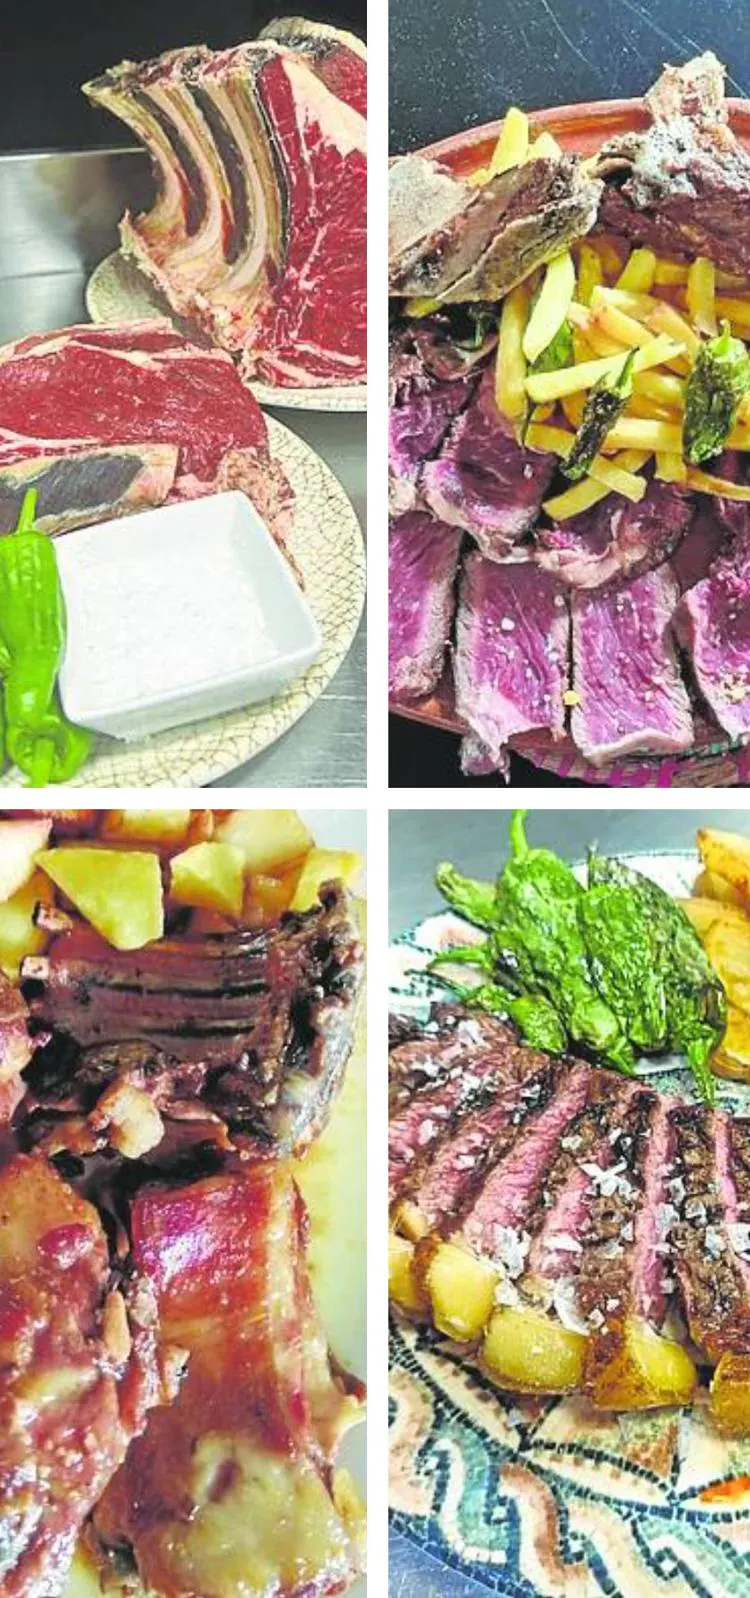 Carne a la piedra de ternera de Ávila – Carnicería José Luis Gómez